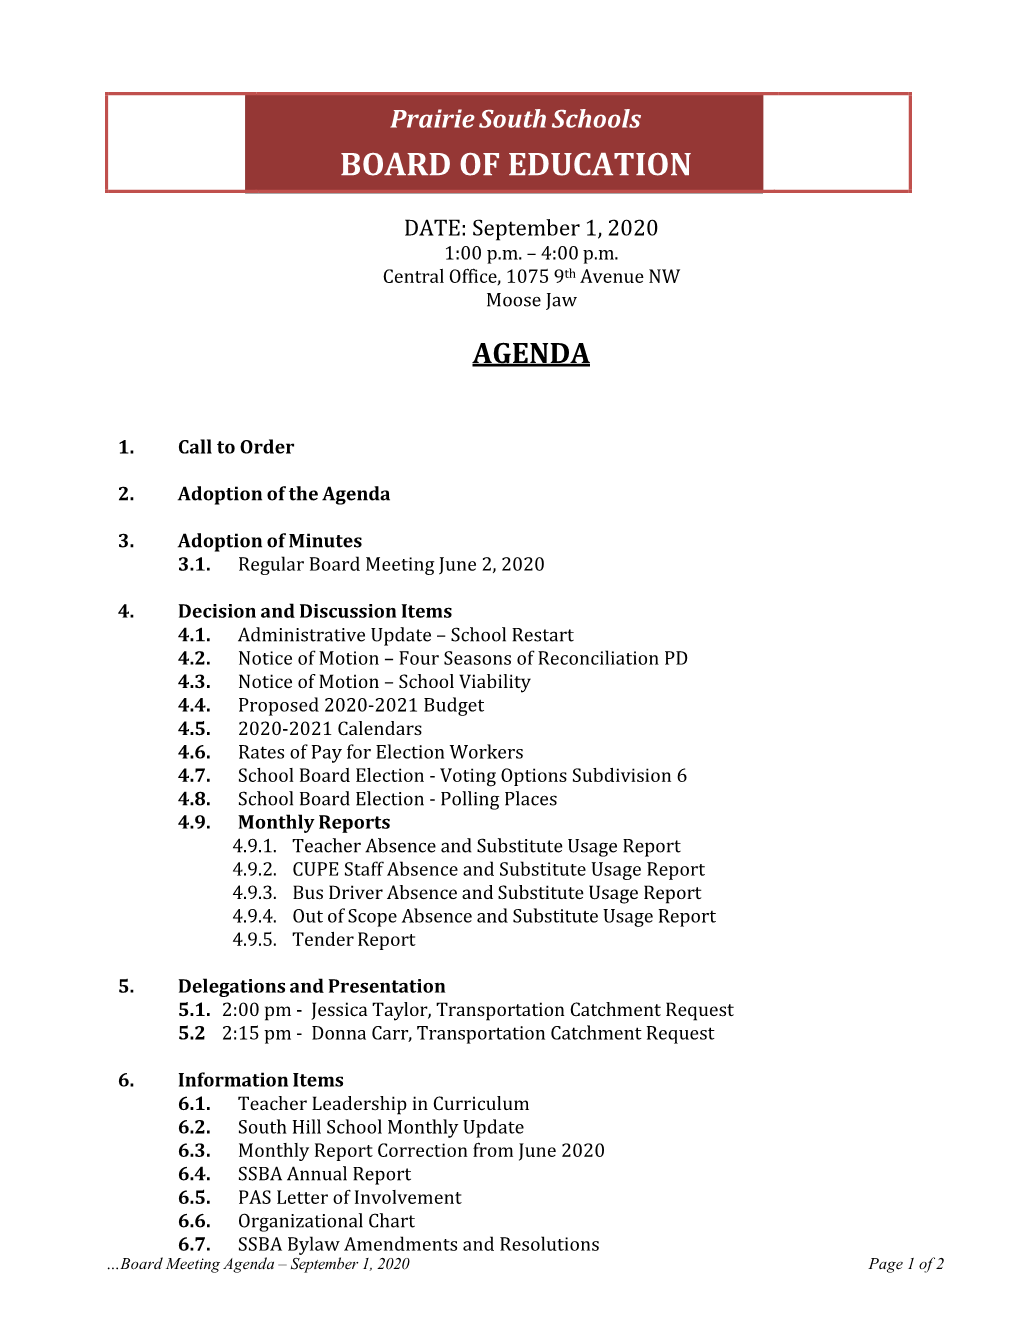 September 1, 2020 Meeting Agenda